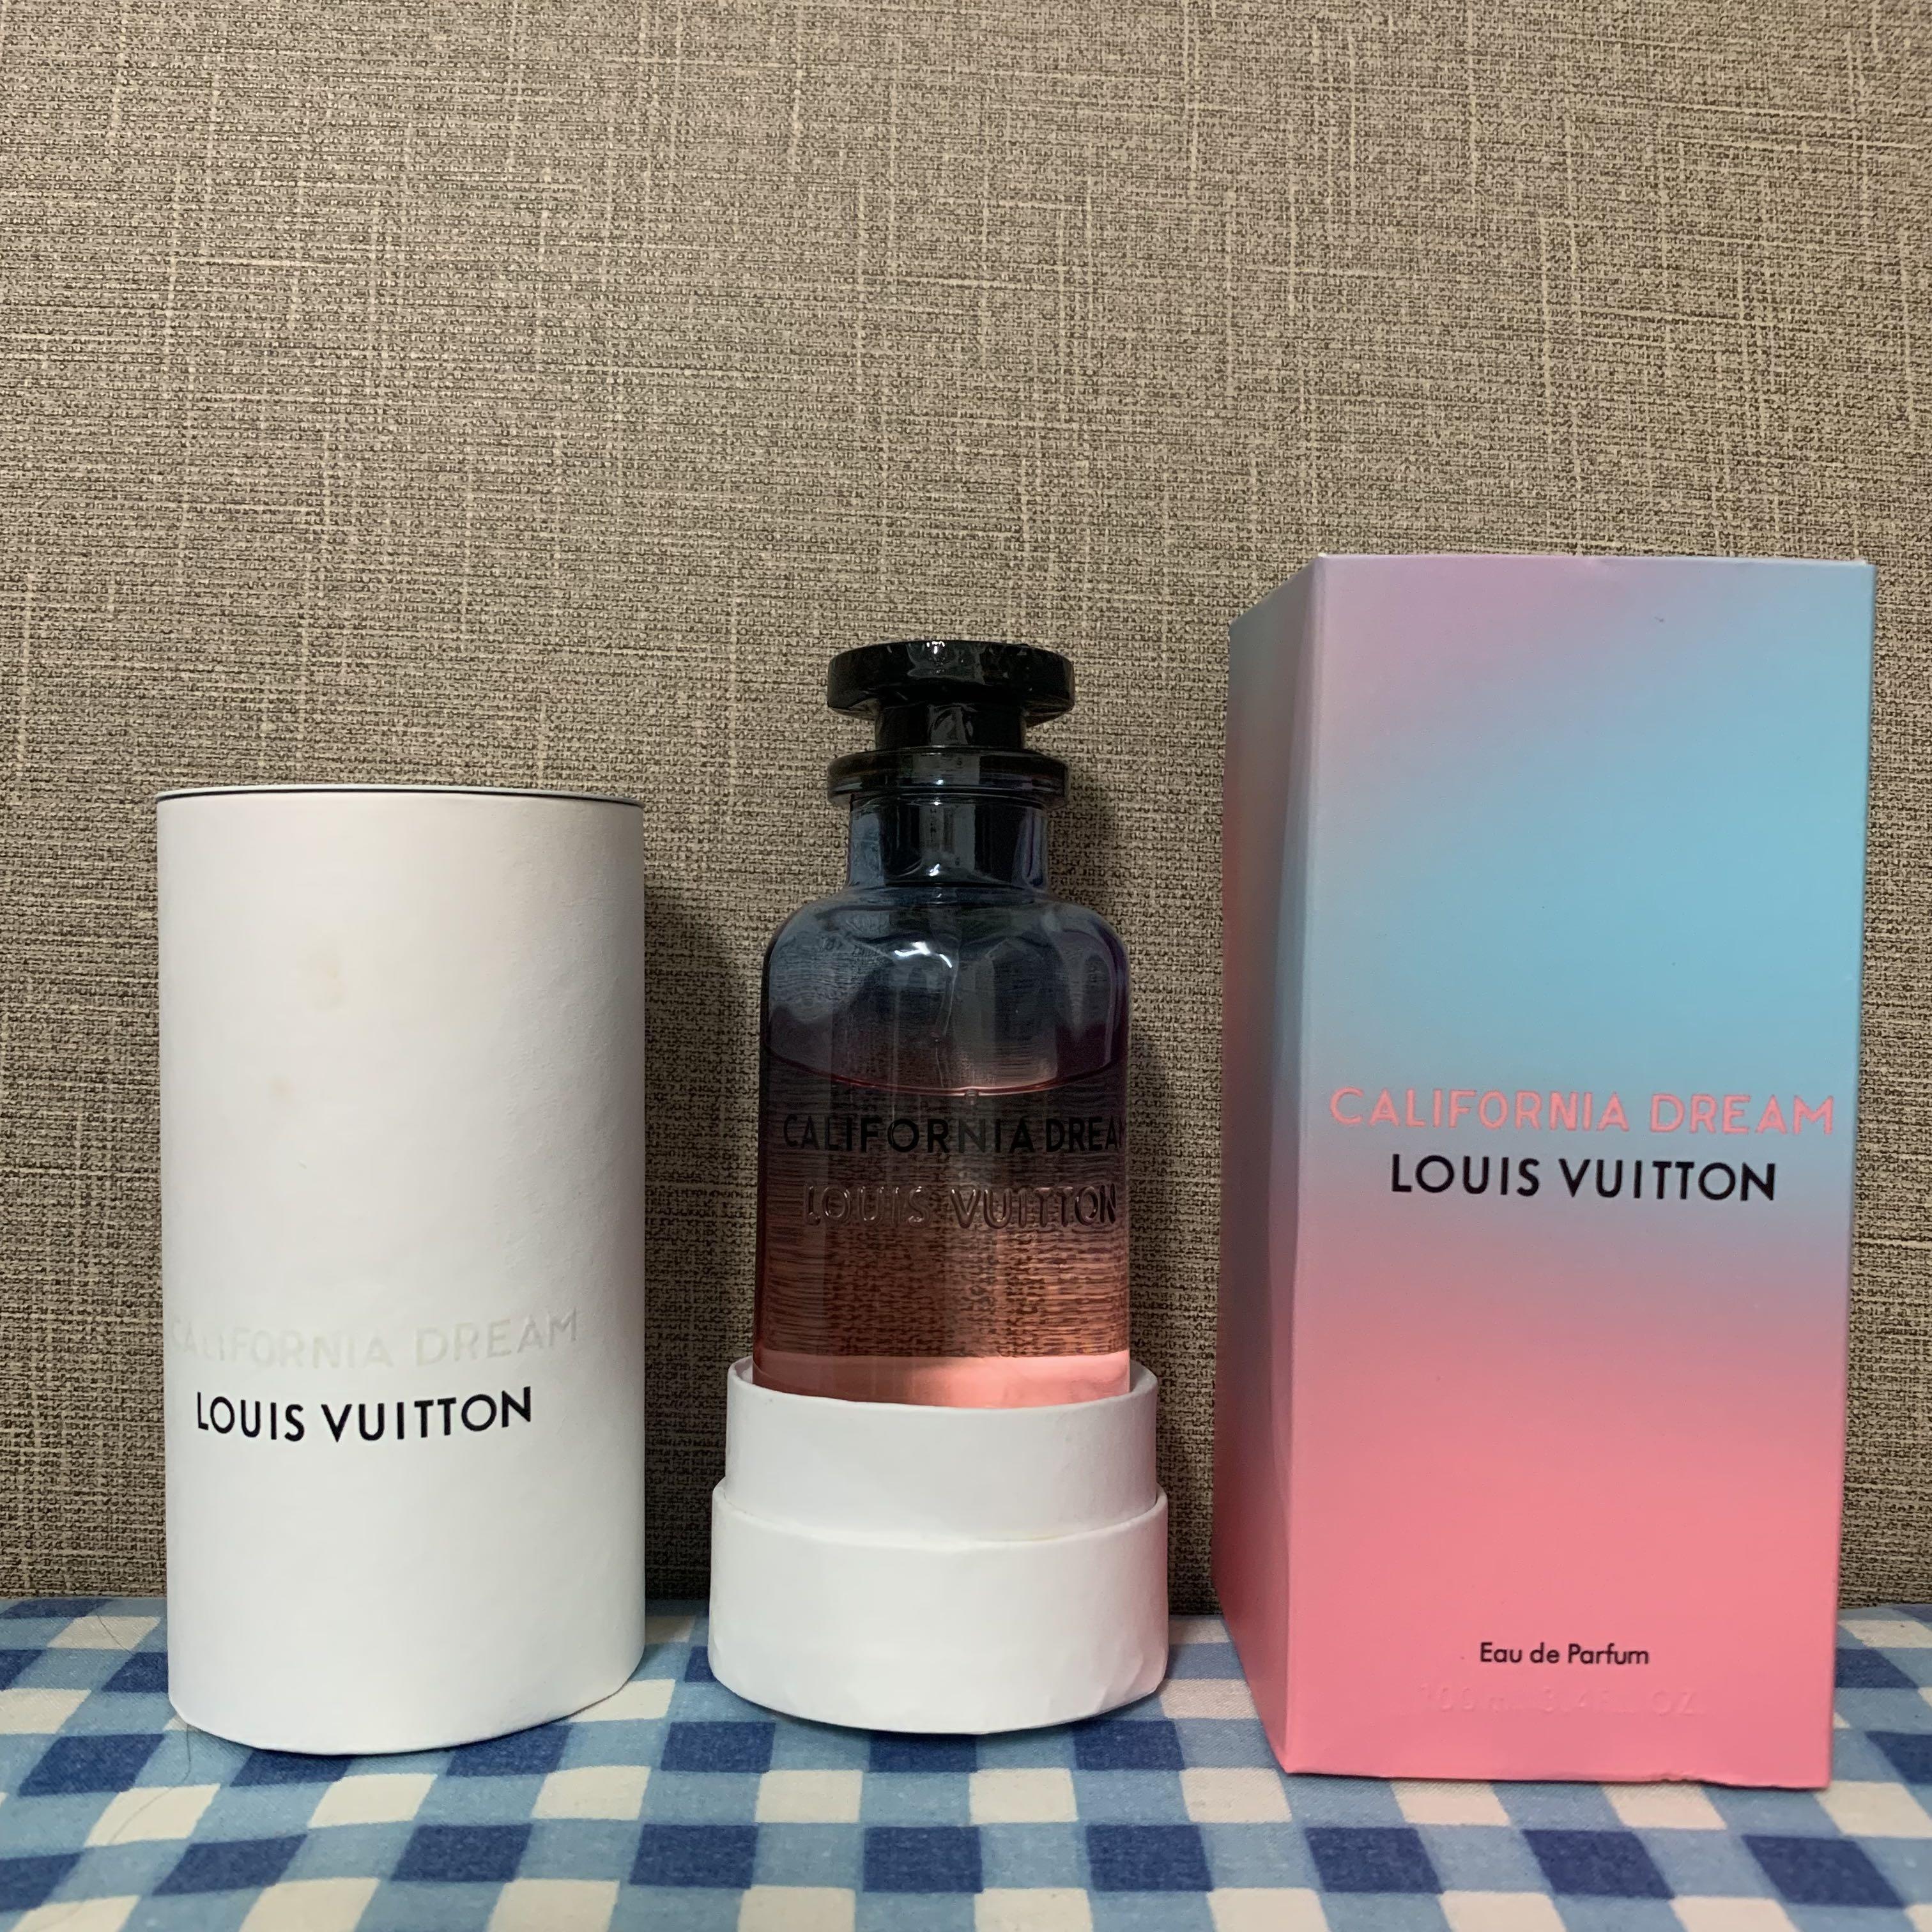 Buy Authentic Louis Vuitton California Dream Eau de Parfum 100 ml Unisex, Discount Prices